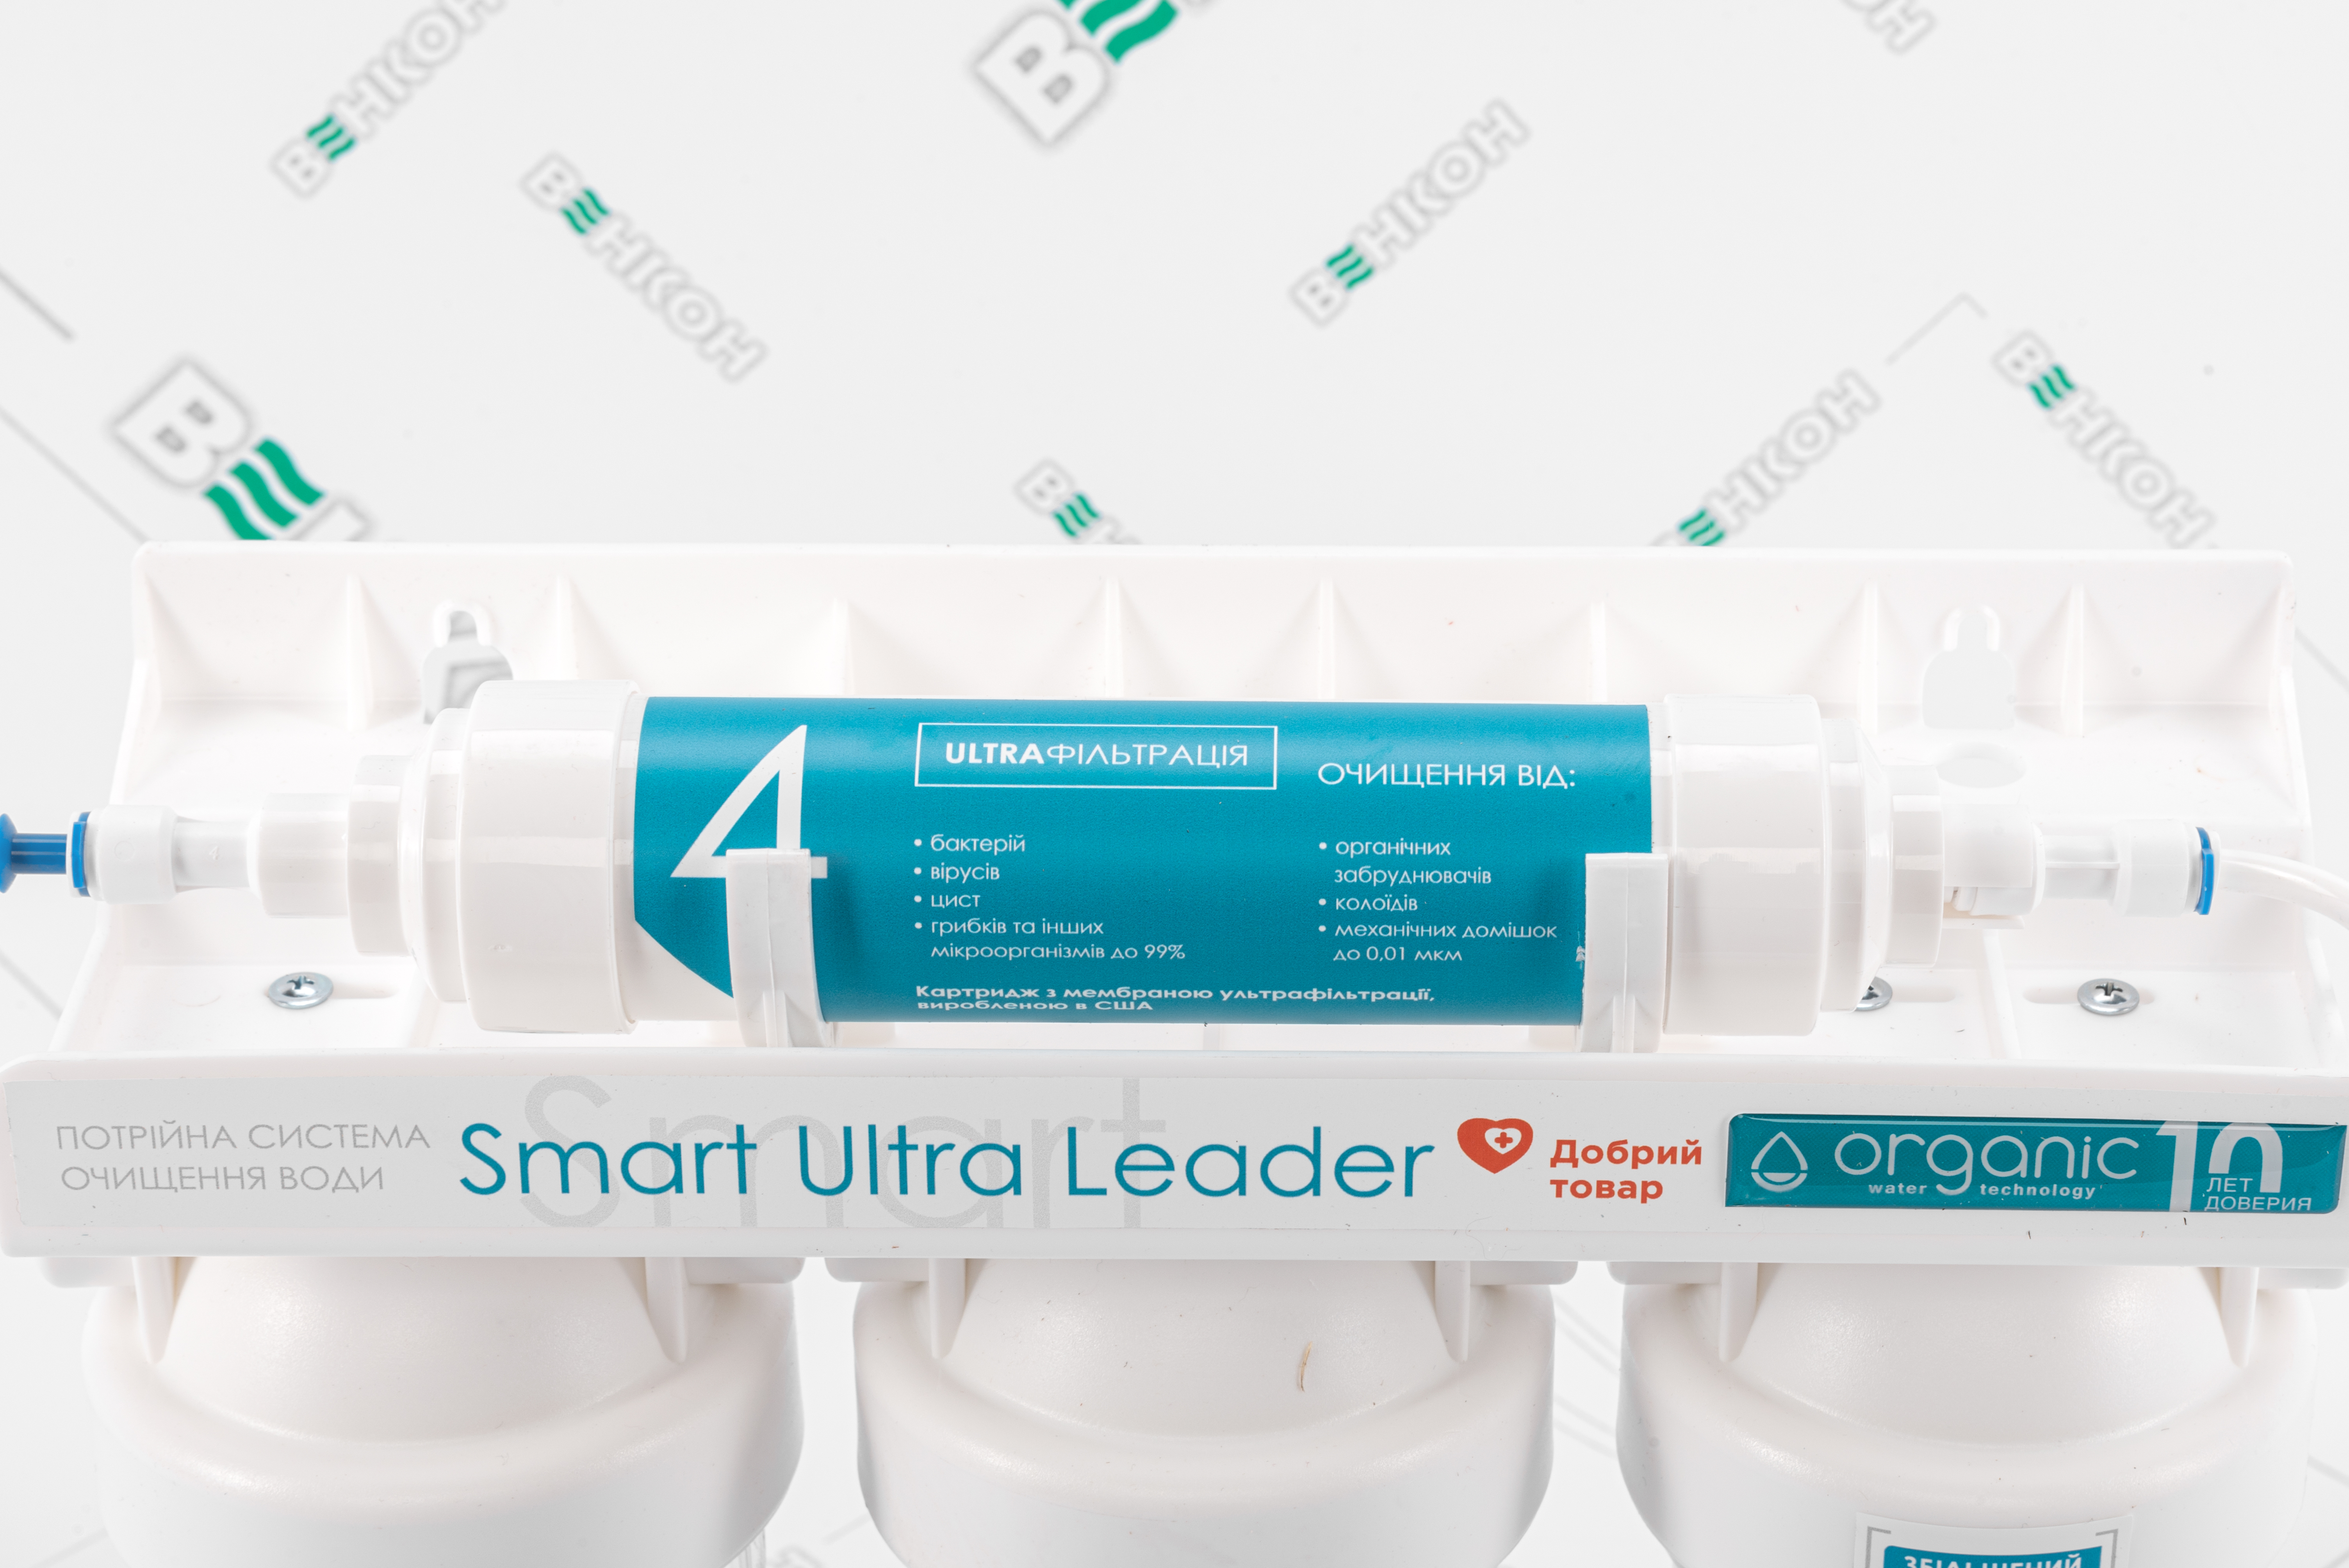 продаём Organic Smart Ultra Leader в Украине - фото 4